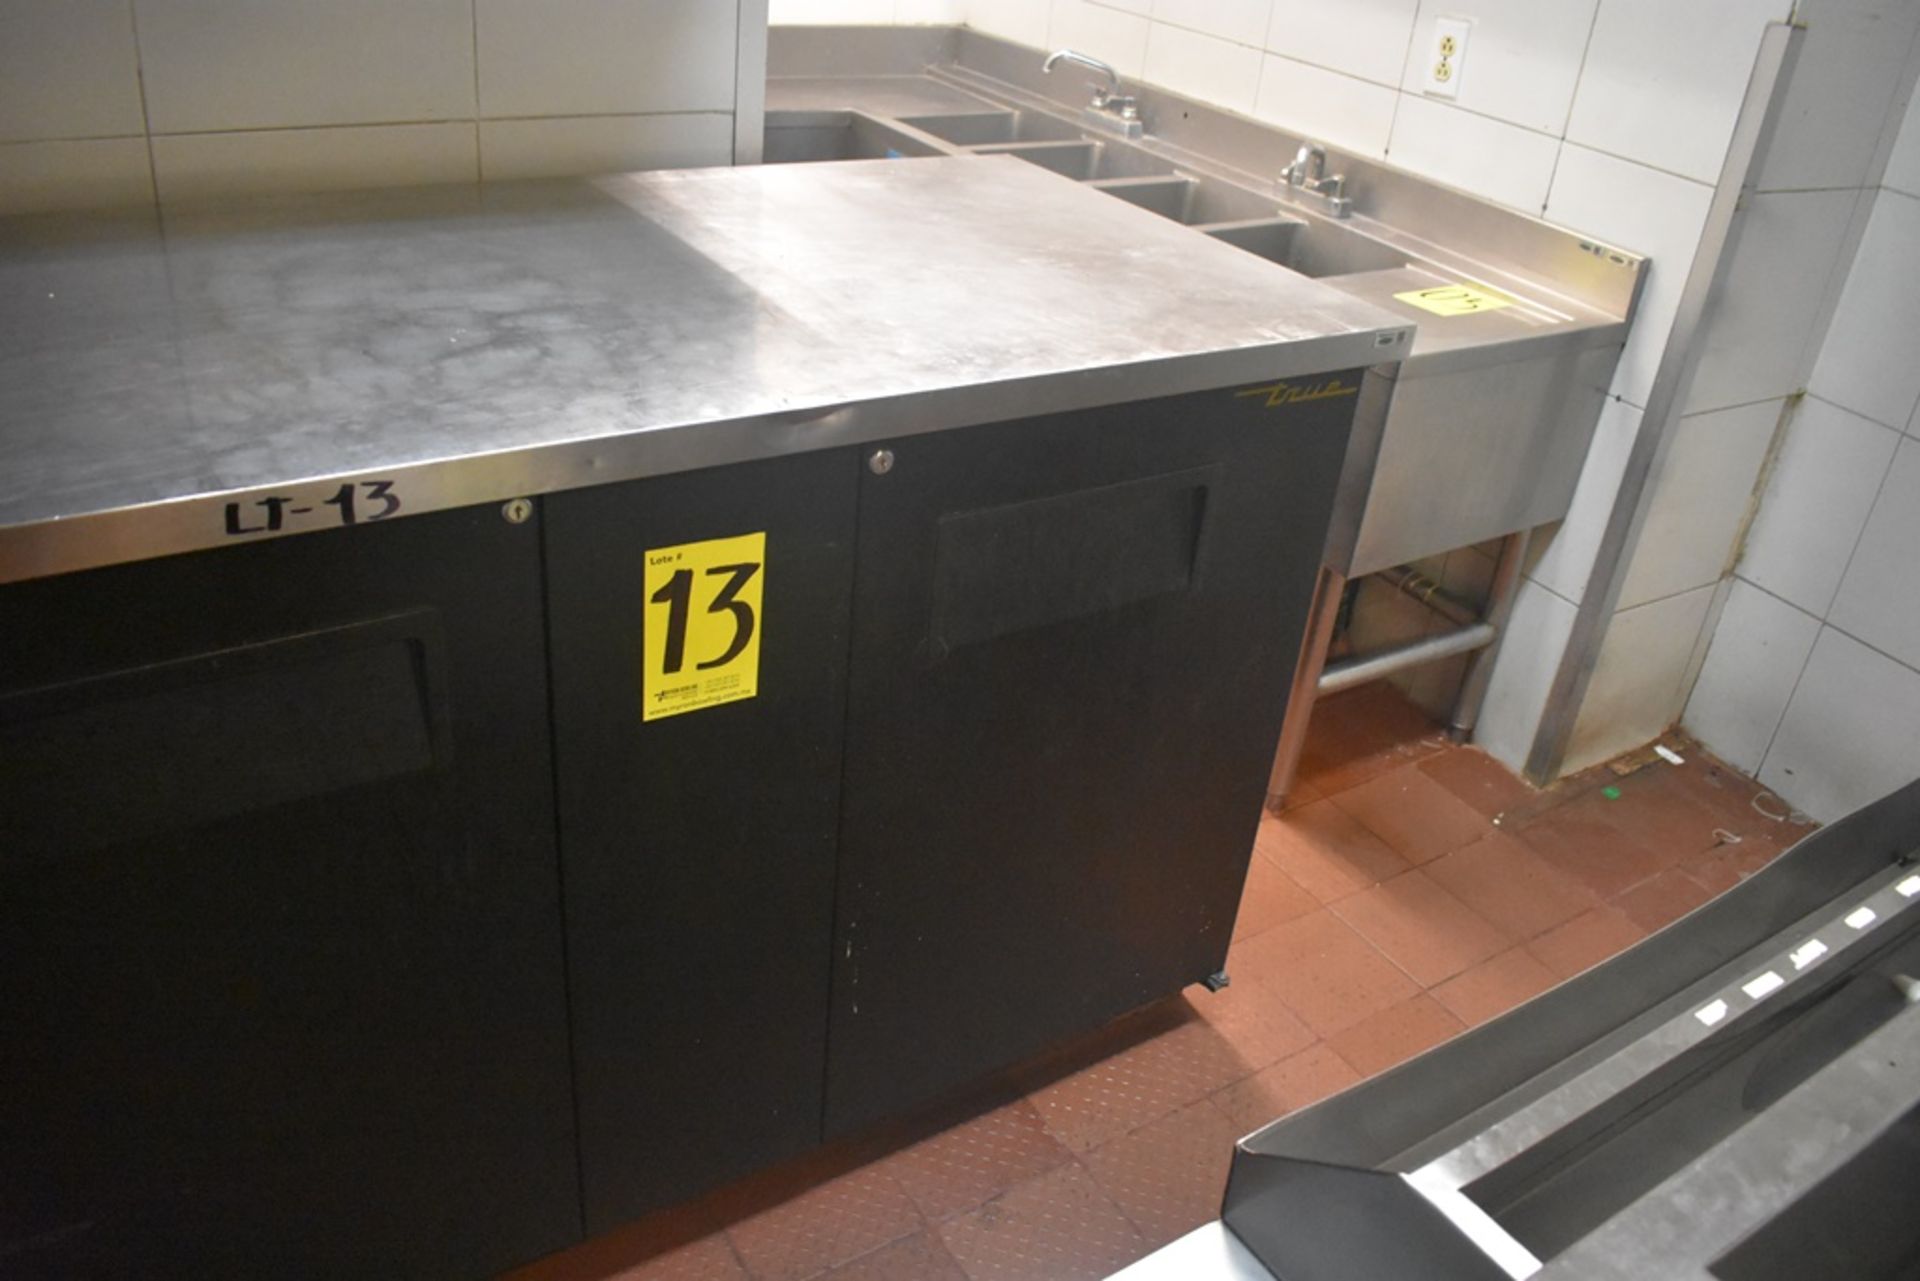 Mesa de trabajo refrigerada con cubierta en acero inoxidable marca True, modelo TBB-3, número de se - Image 11 of 20